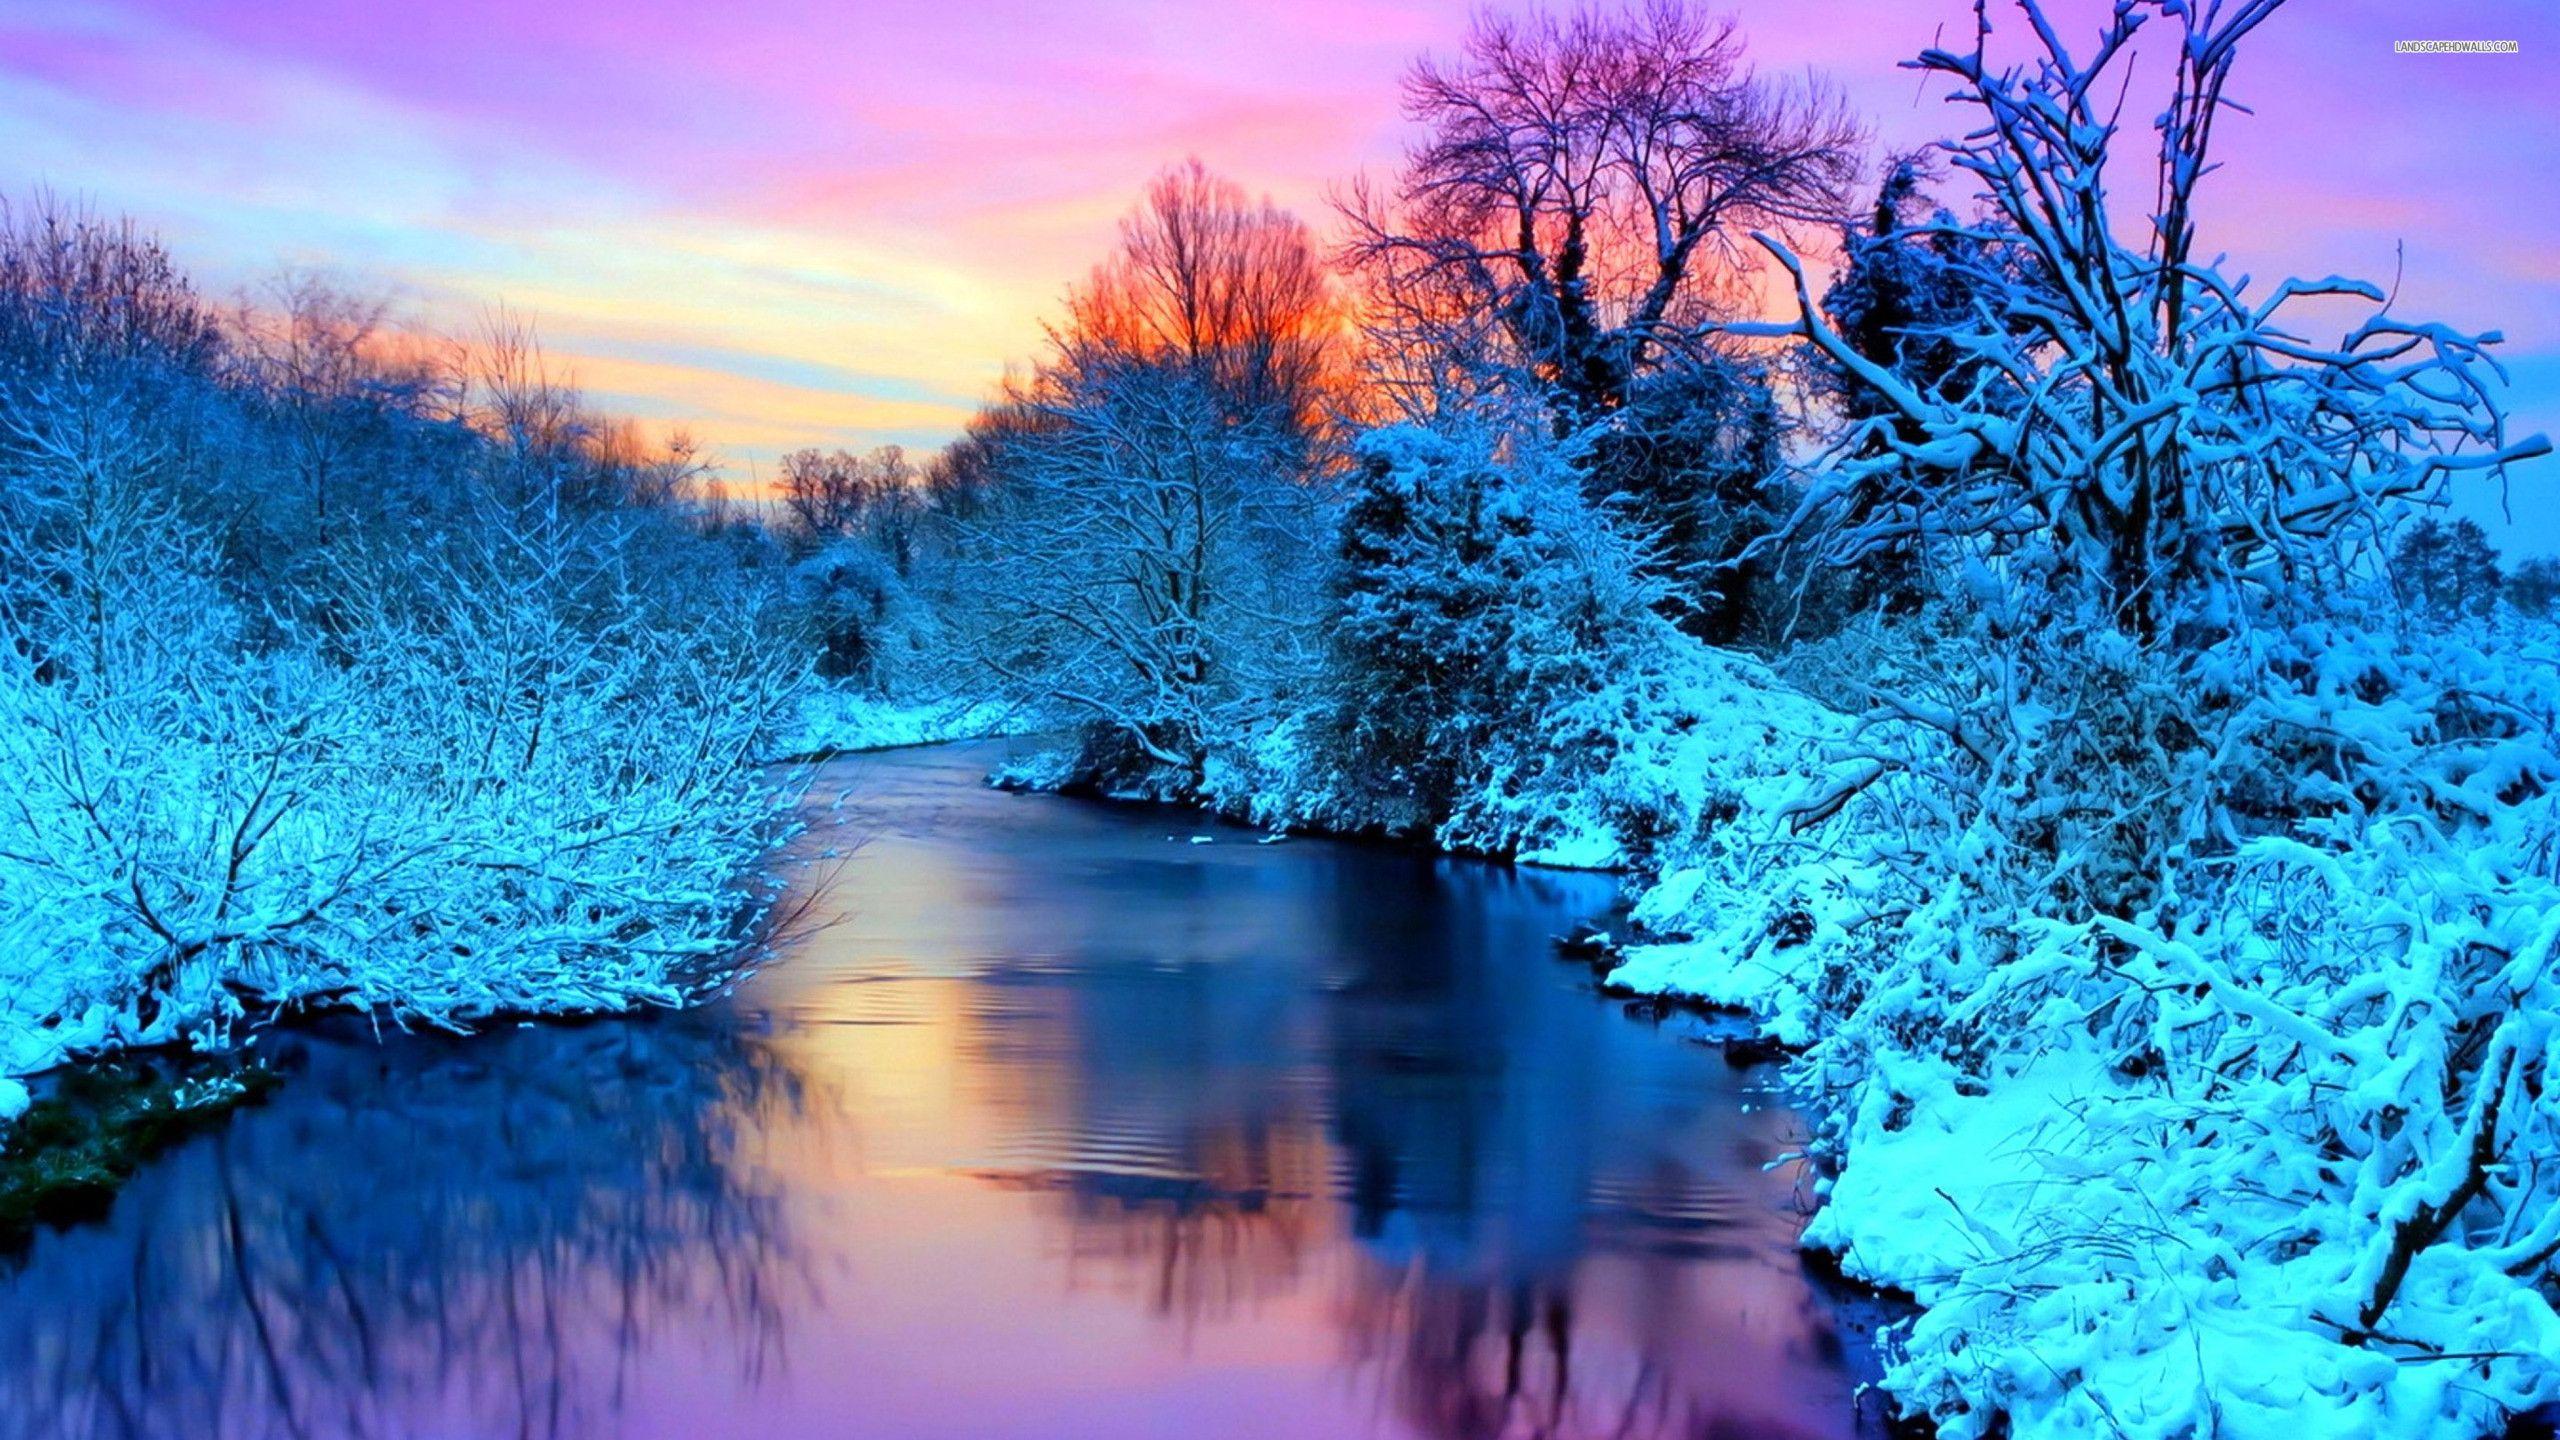 Winter Scenery Wallpapers - Top Những Hình Ảnh Đẹp